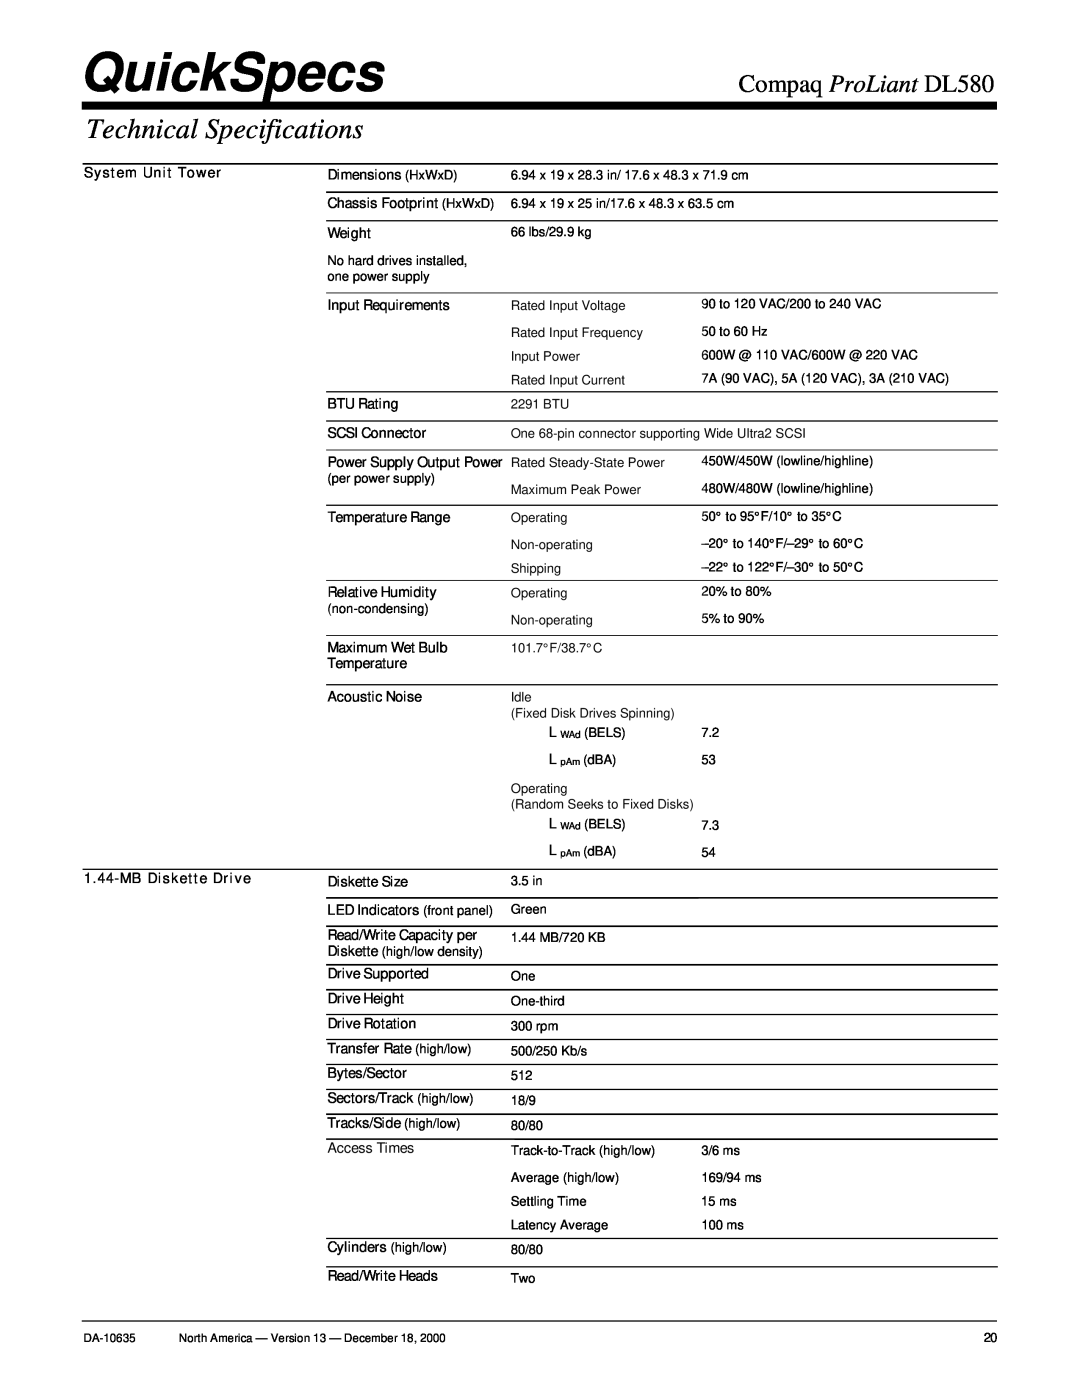 Compaq warranty Technical Specifications, QuickSpecs, Compaq ProLiant DL580 